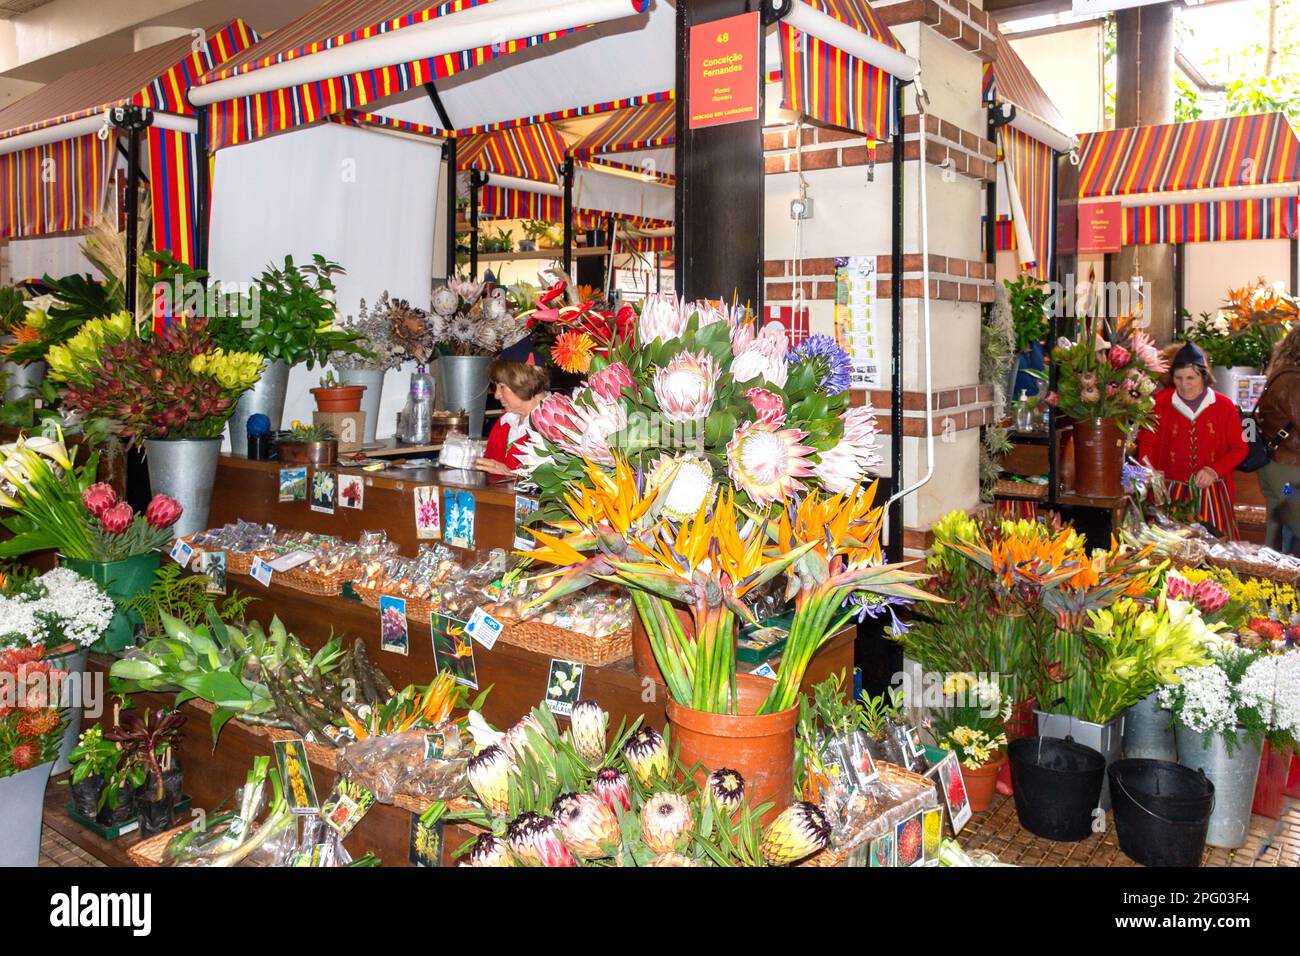 Flower shop inside Mercado dos Lavradores (Farmers' Market), Rua Brigadeiro Oudinot, Funchal, Madeira, Portugal Stock Photo